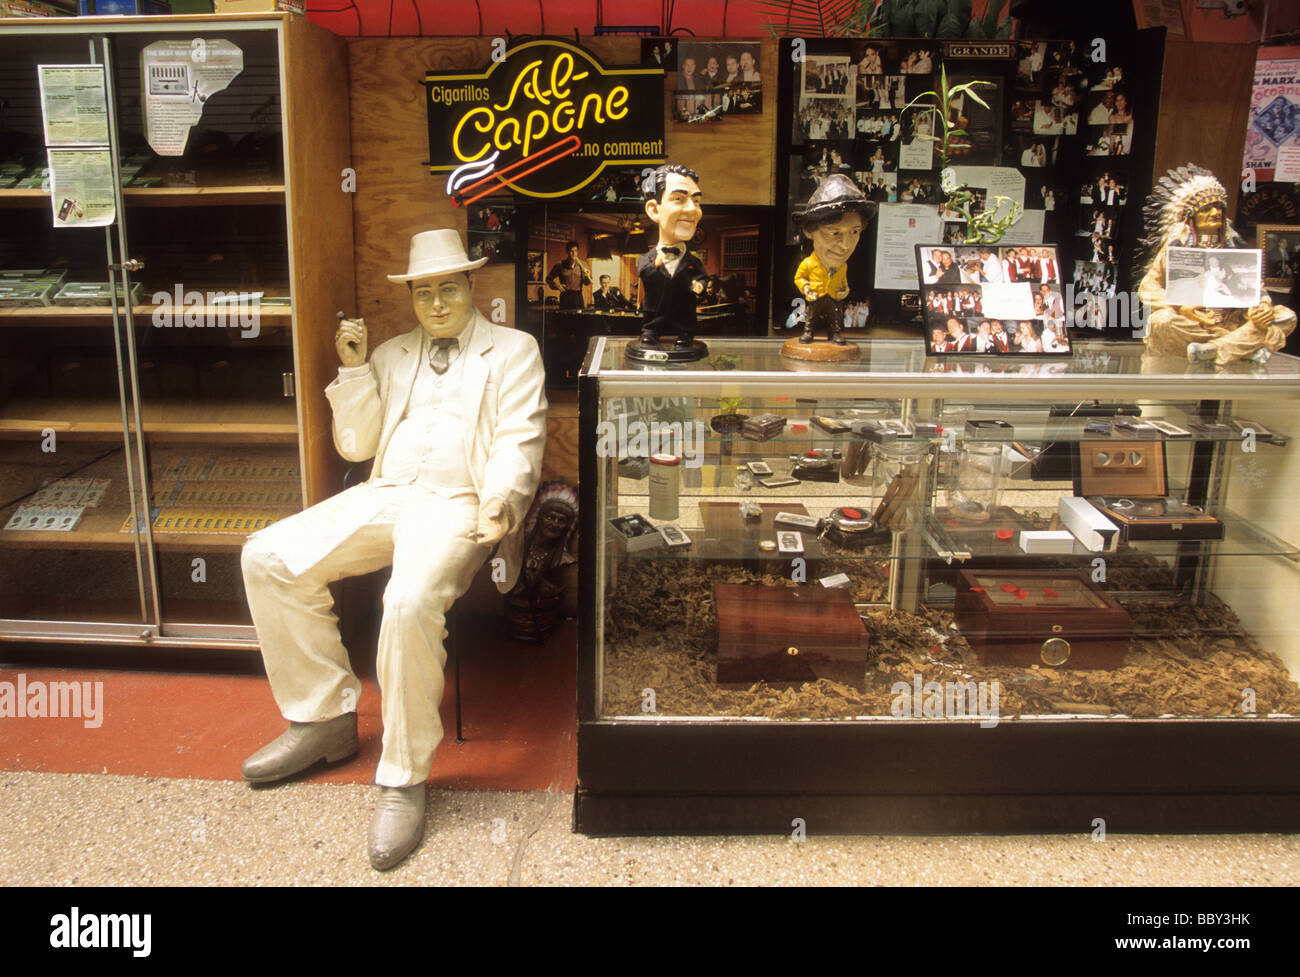 New York City le marché alimentaire de détail de Bronx Arthur Avenue.Statue d'Al Capone, gangster de New York, au stand du vendeur de tabac.New York, États-Unis Banque D'Images